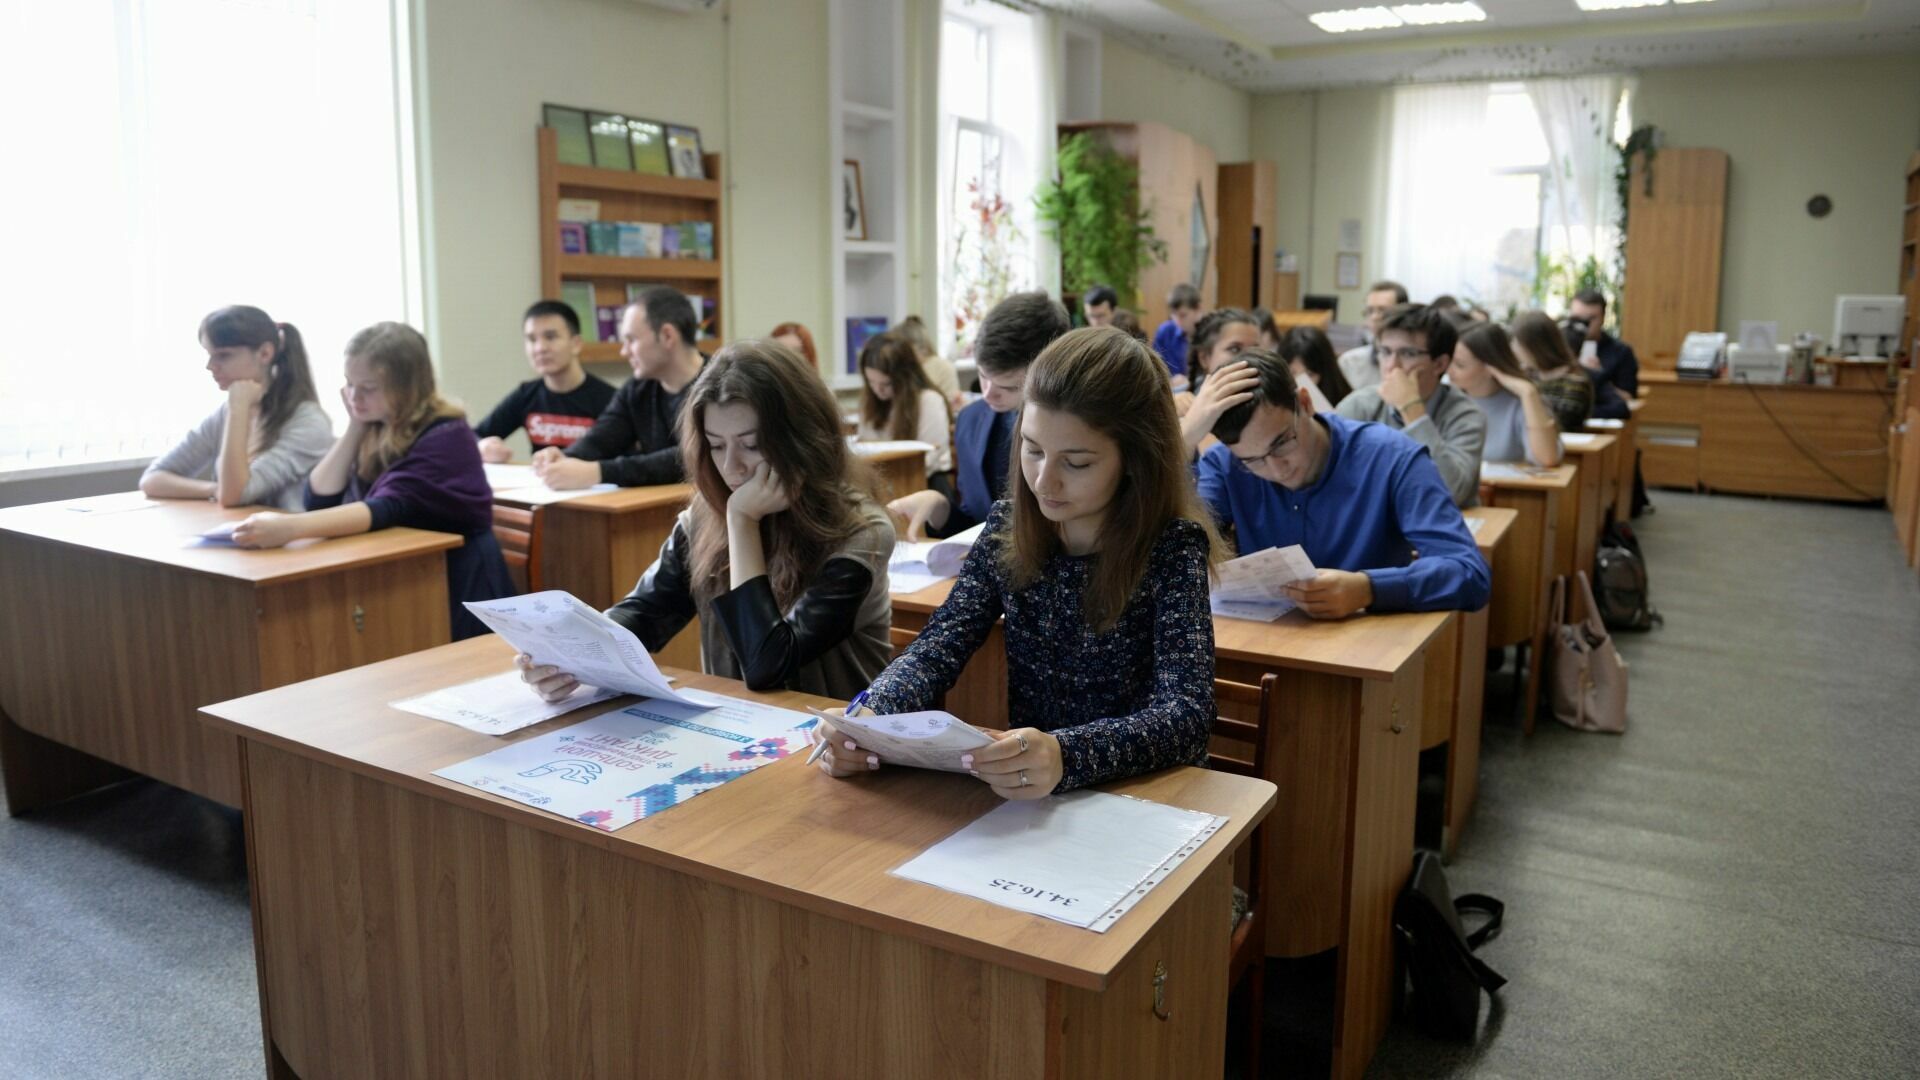 Очник на бюджете: Росстат составил портрет типичного студента из Волгограда